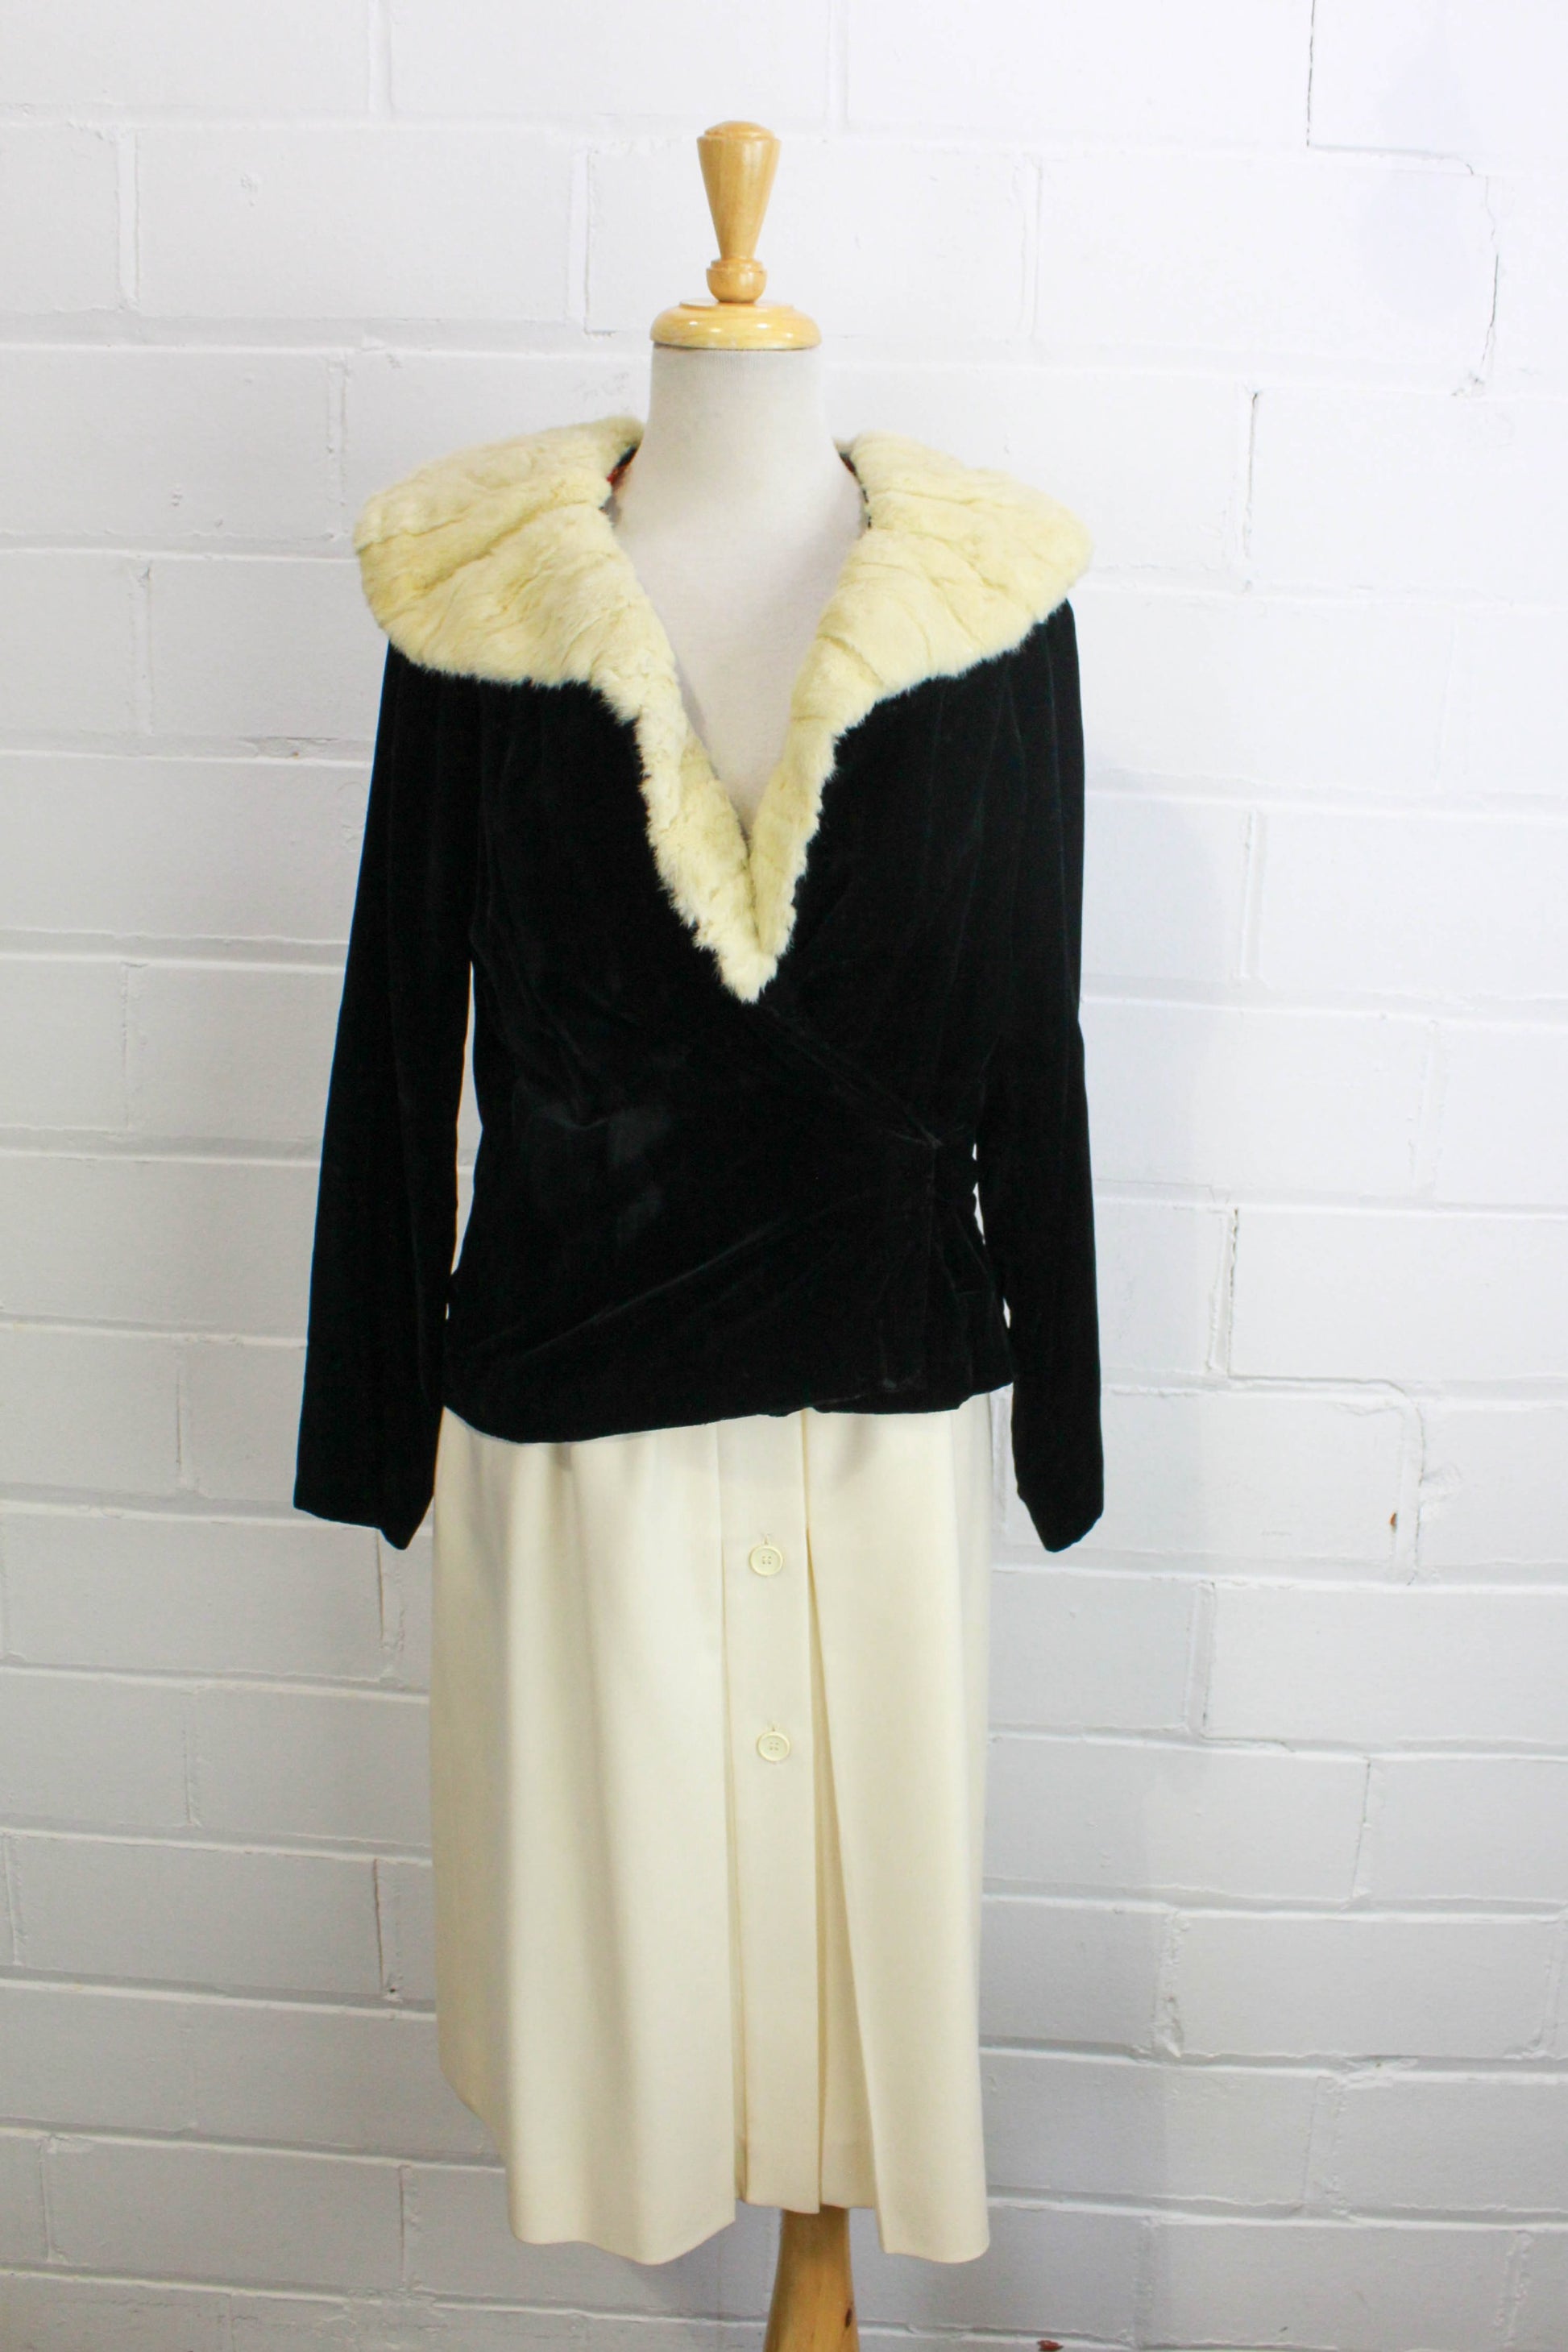 Louis Feraud Paris Coat Womens 12 Large Vintage Pieced Fur 